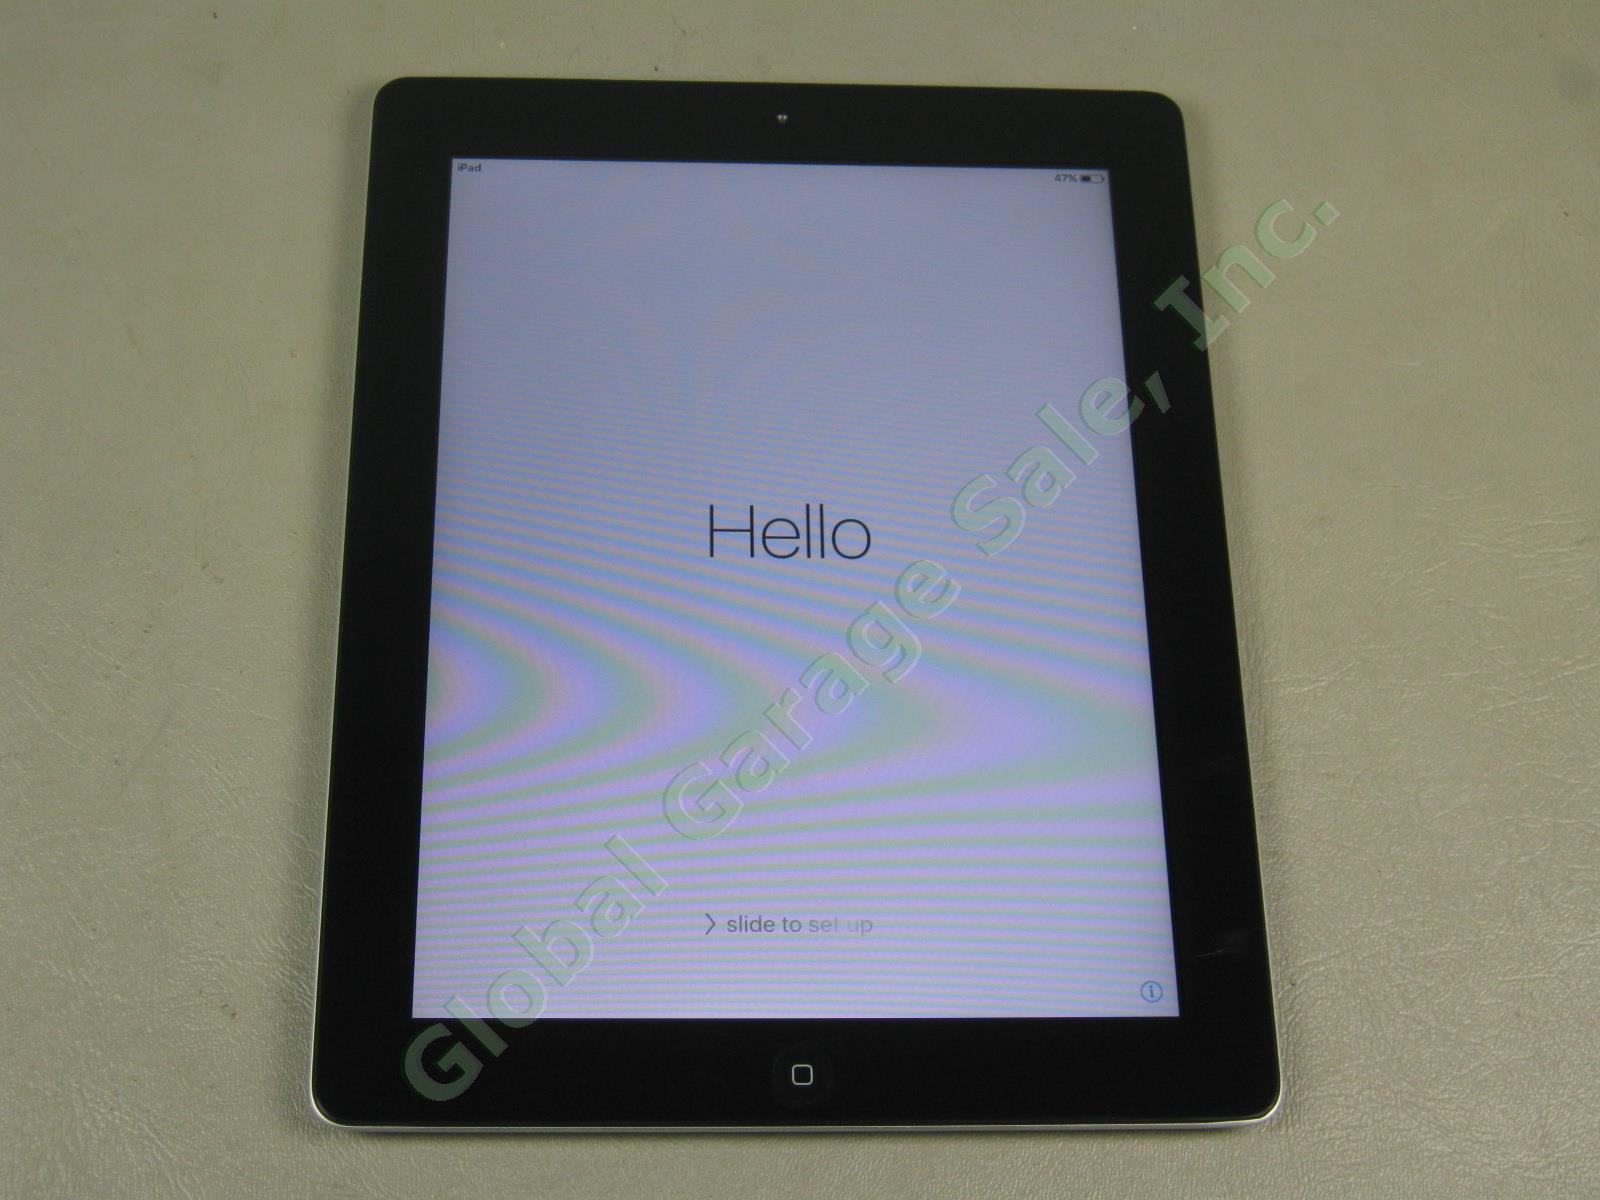 Apple iPad 2 Wifi 16GB Black Tablet Factory Reset MC770LL/A A1395 No Reserve!